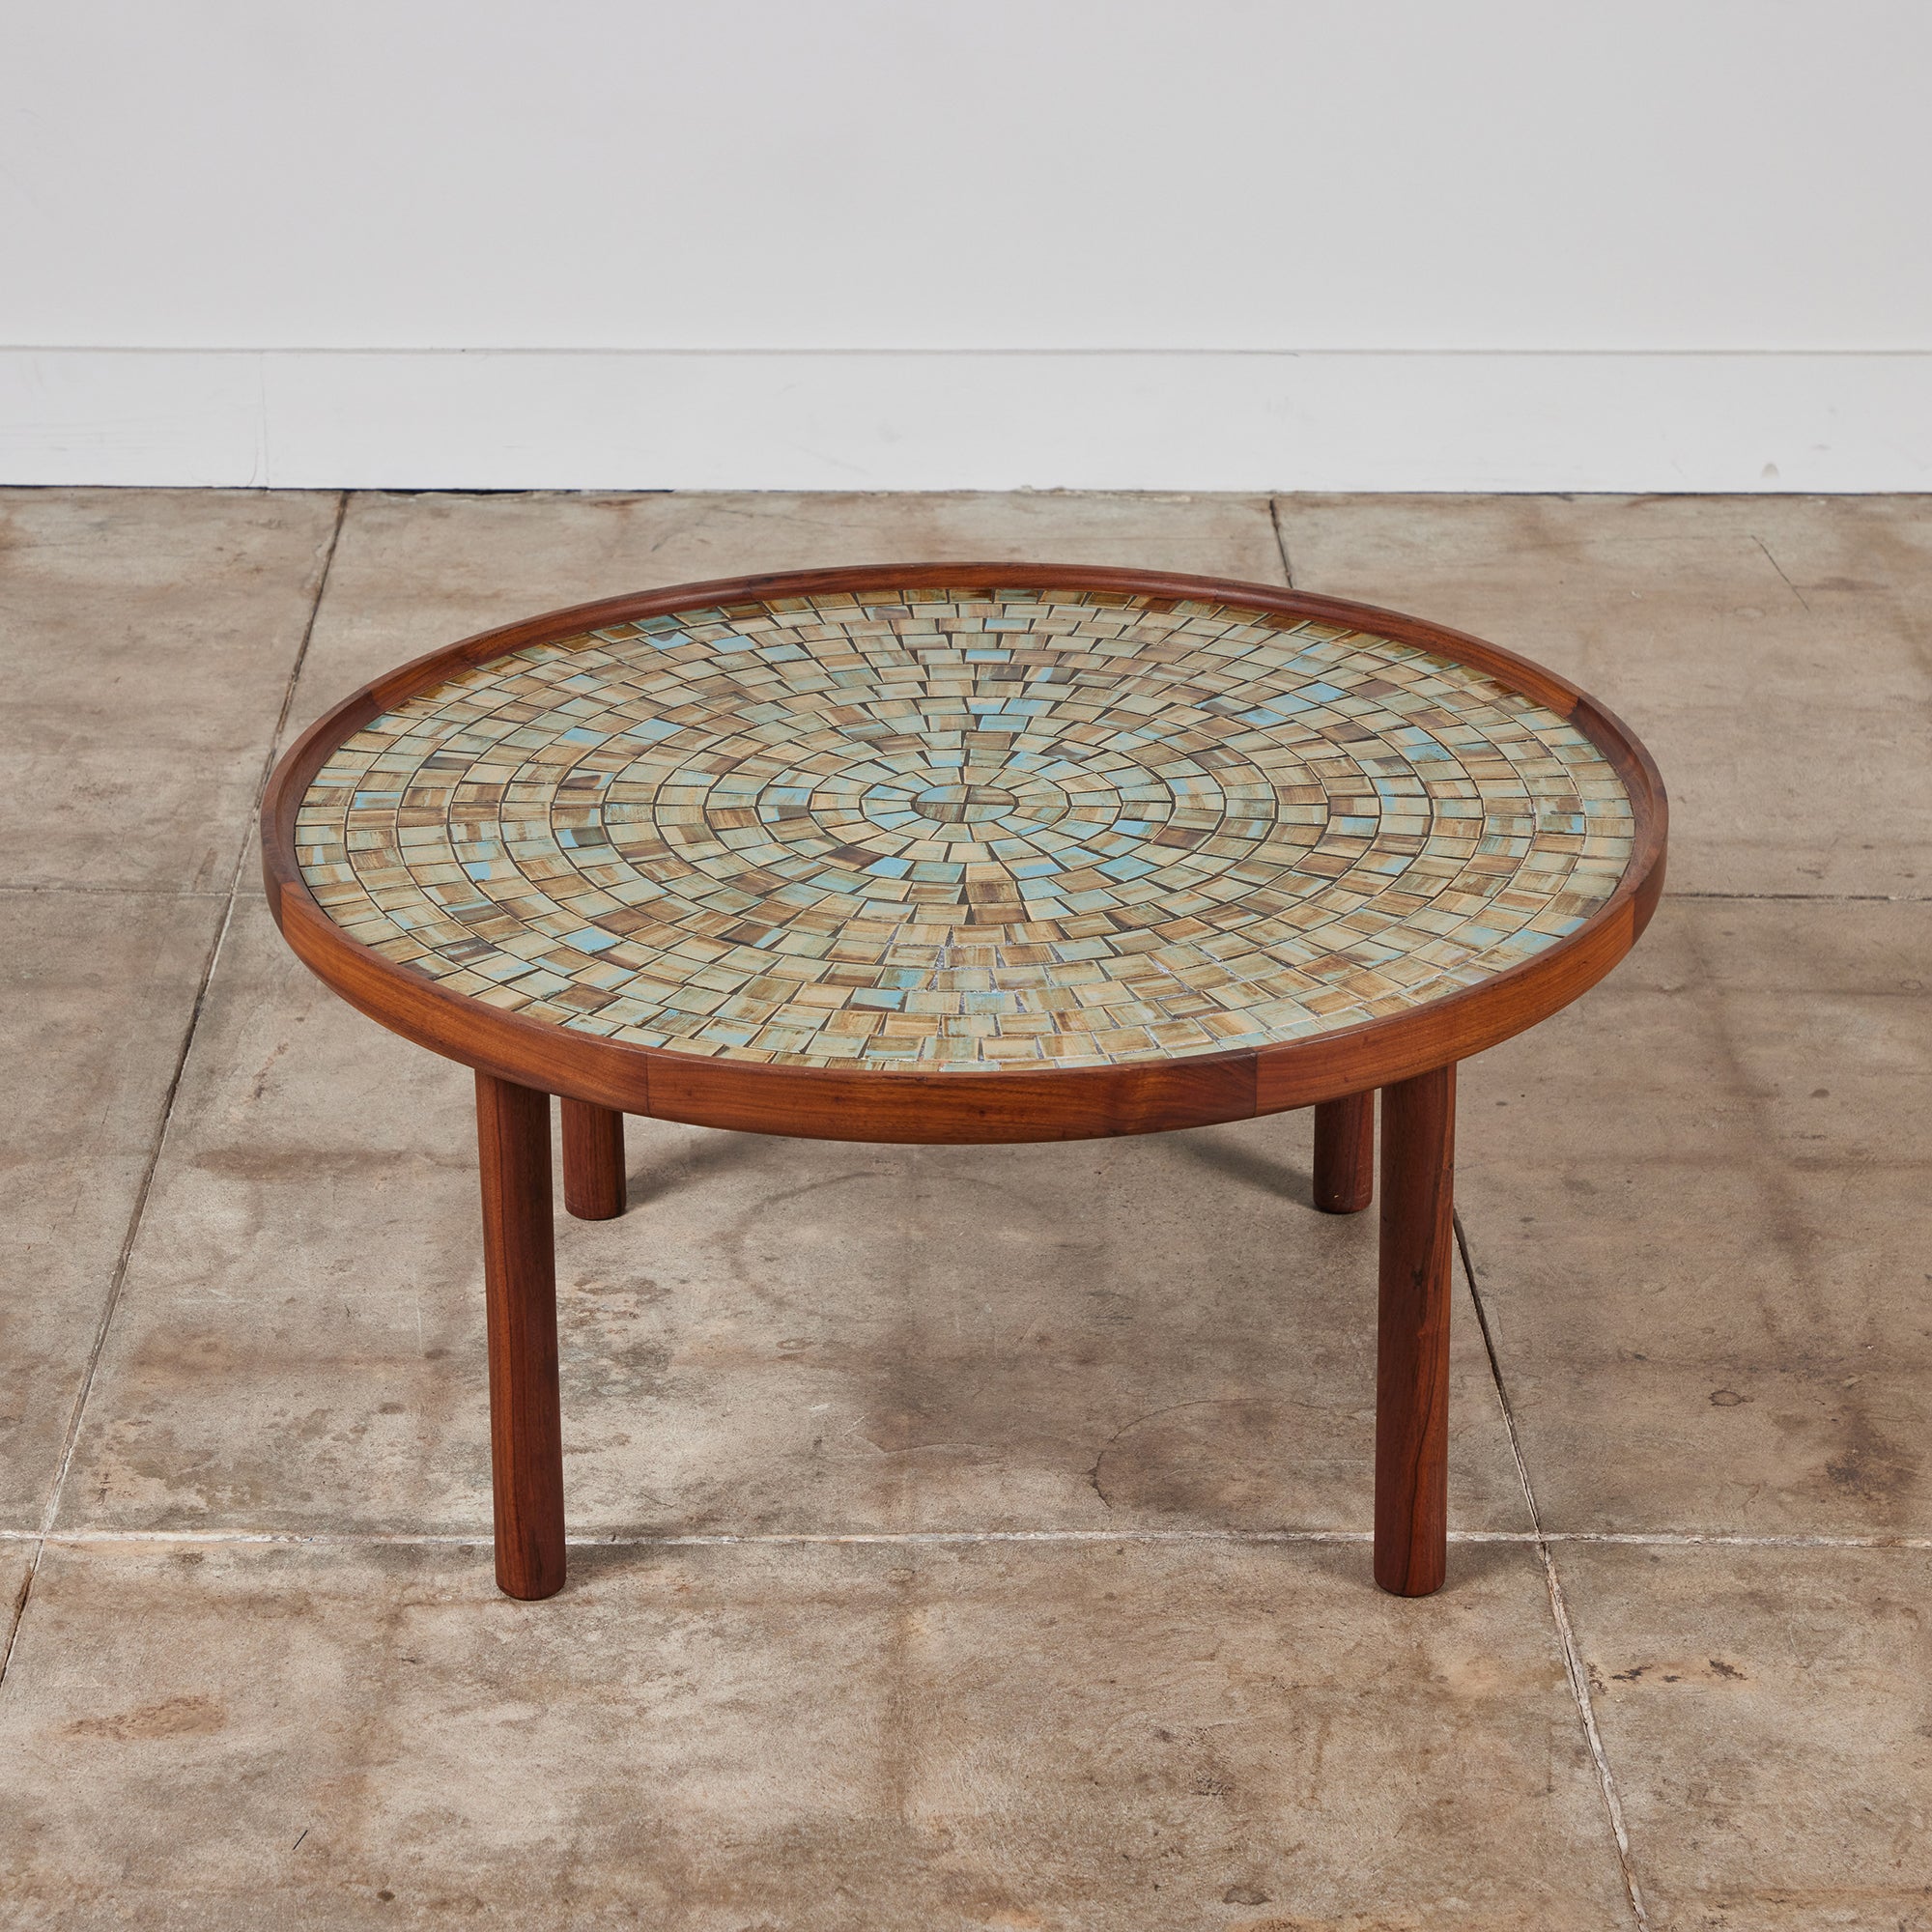 Gordon & Jane Martz Round Mosaic Tile Coffee Table